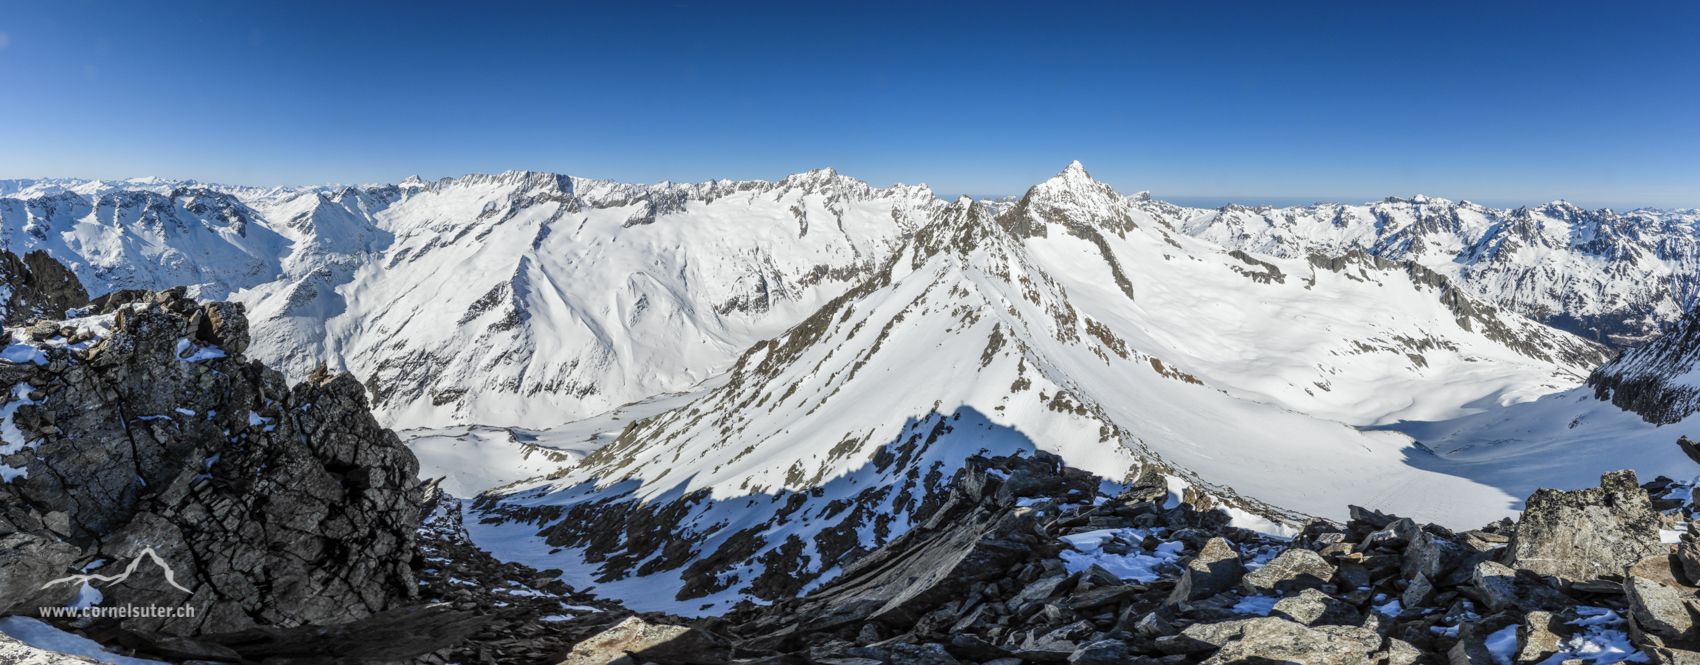 Nach 3:45h Aufstieg erreichen wir das Rohrspitzli, herrliches Panorama. der markante grosse Zacken ist der Fleckistock 3416m, höchster Berg im Kanton Uri der ganz im Urnerland steht.